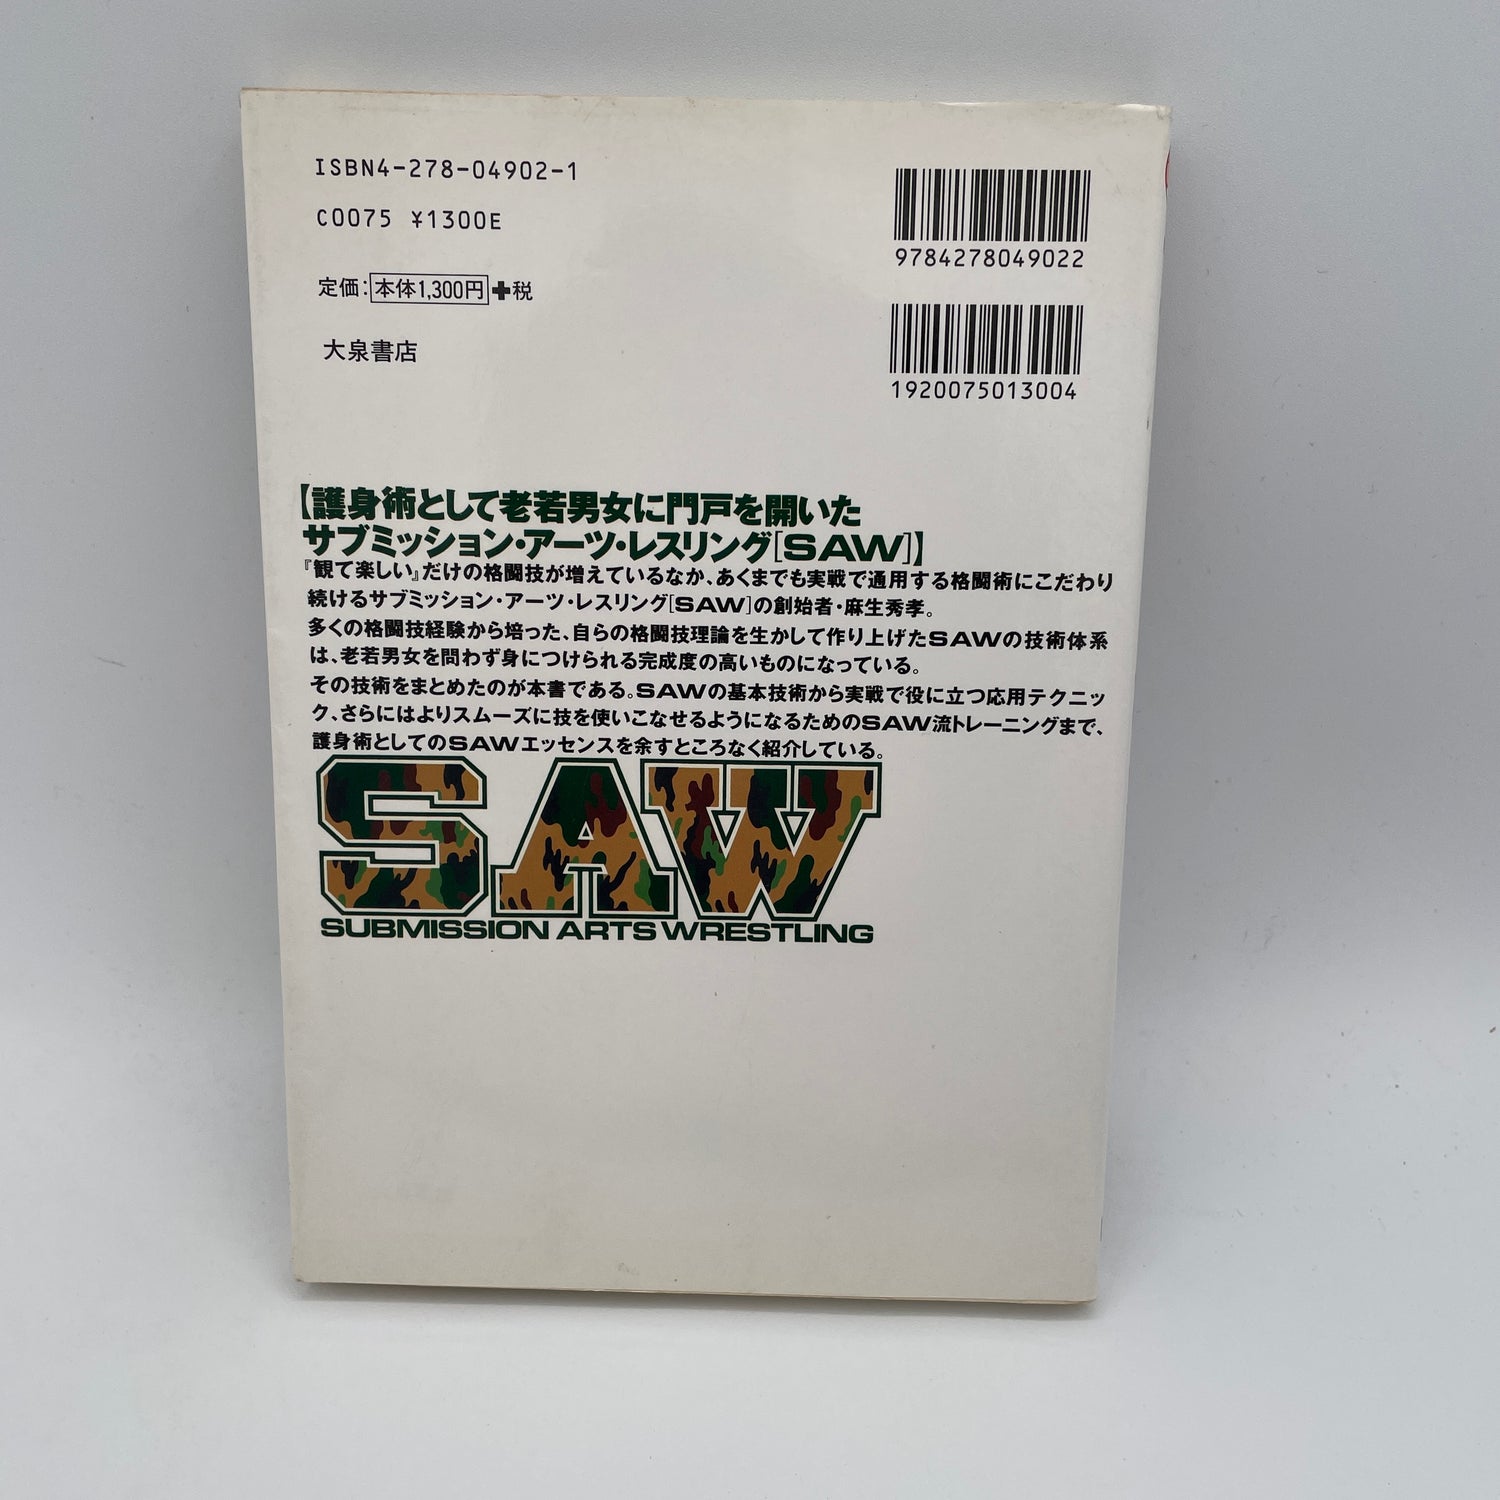 Libro de lucha artística de presentación de Hidetaka Aso (usado)